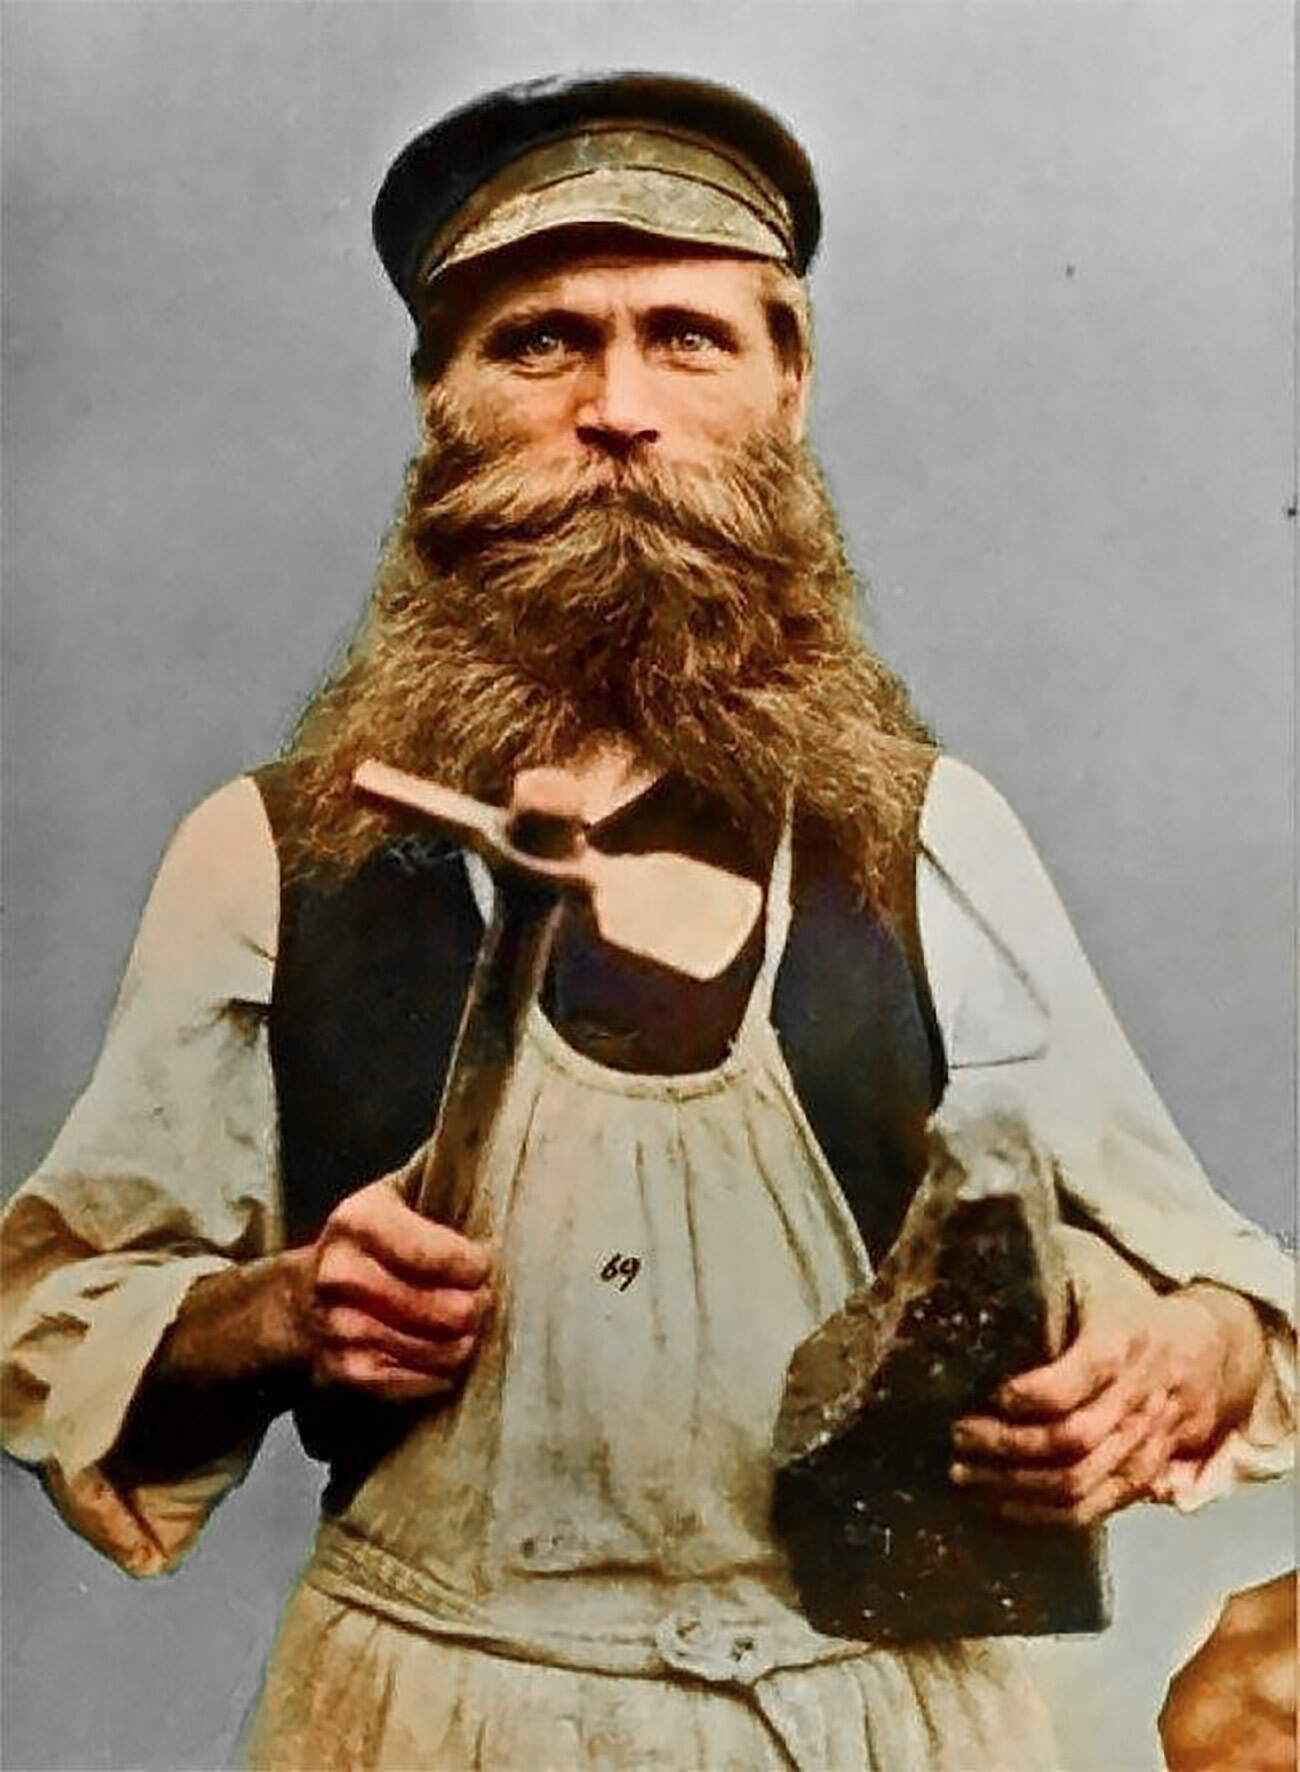 Il “pechník”, ossia il fumista (costruttore di stufe) era una figura estremamente importante, visto il clima, nei villaggi russi. Meglio non farlo arrabbiare